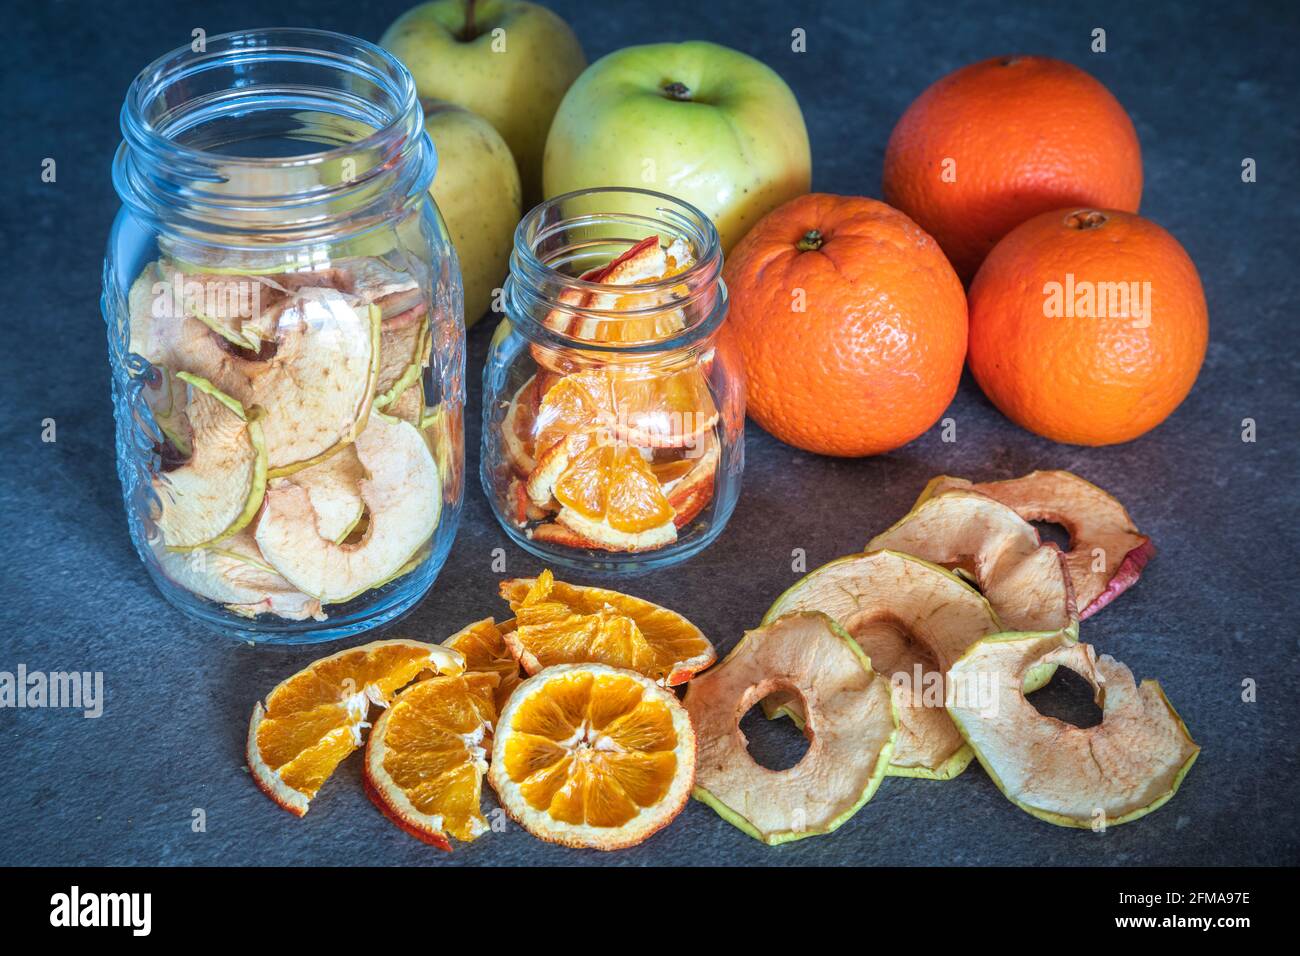 Frische Obstäpfel und Orangen sowie Apfel- und Orangenscheiben dehydriert und in Glasbehältern gelagert, hausgemachte Zubereitungen, Stockfoto